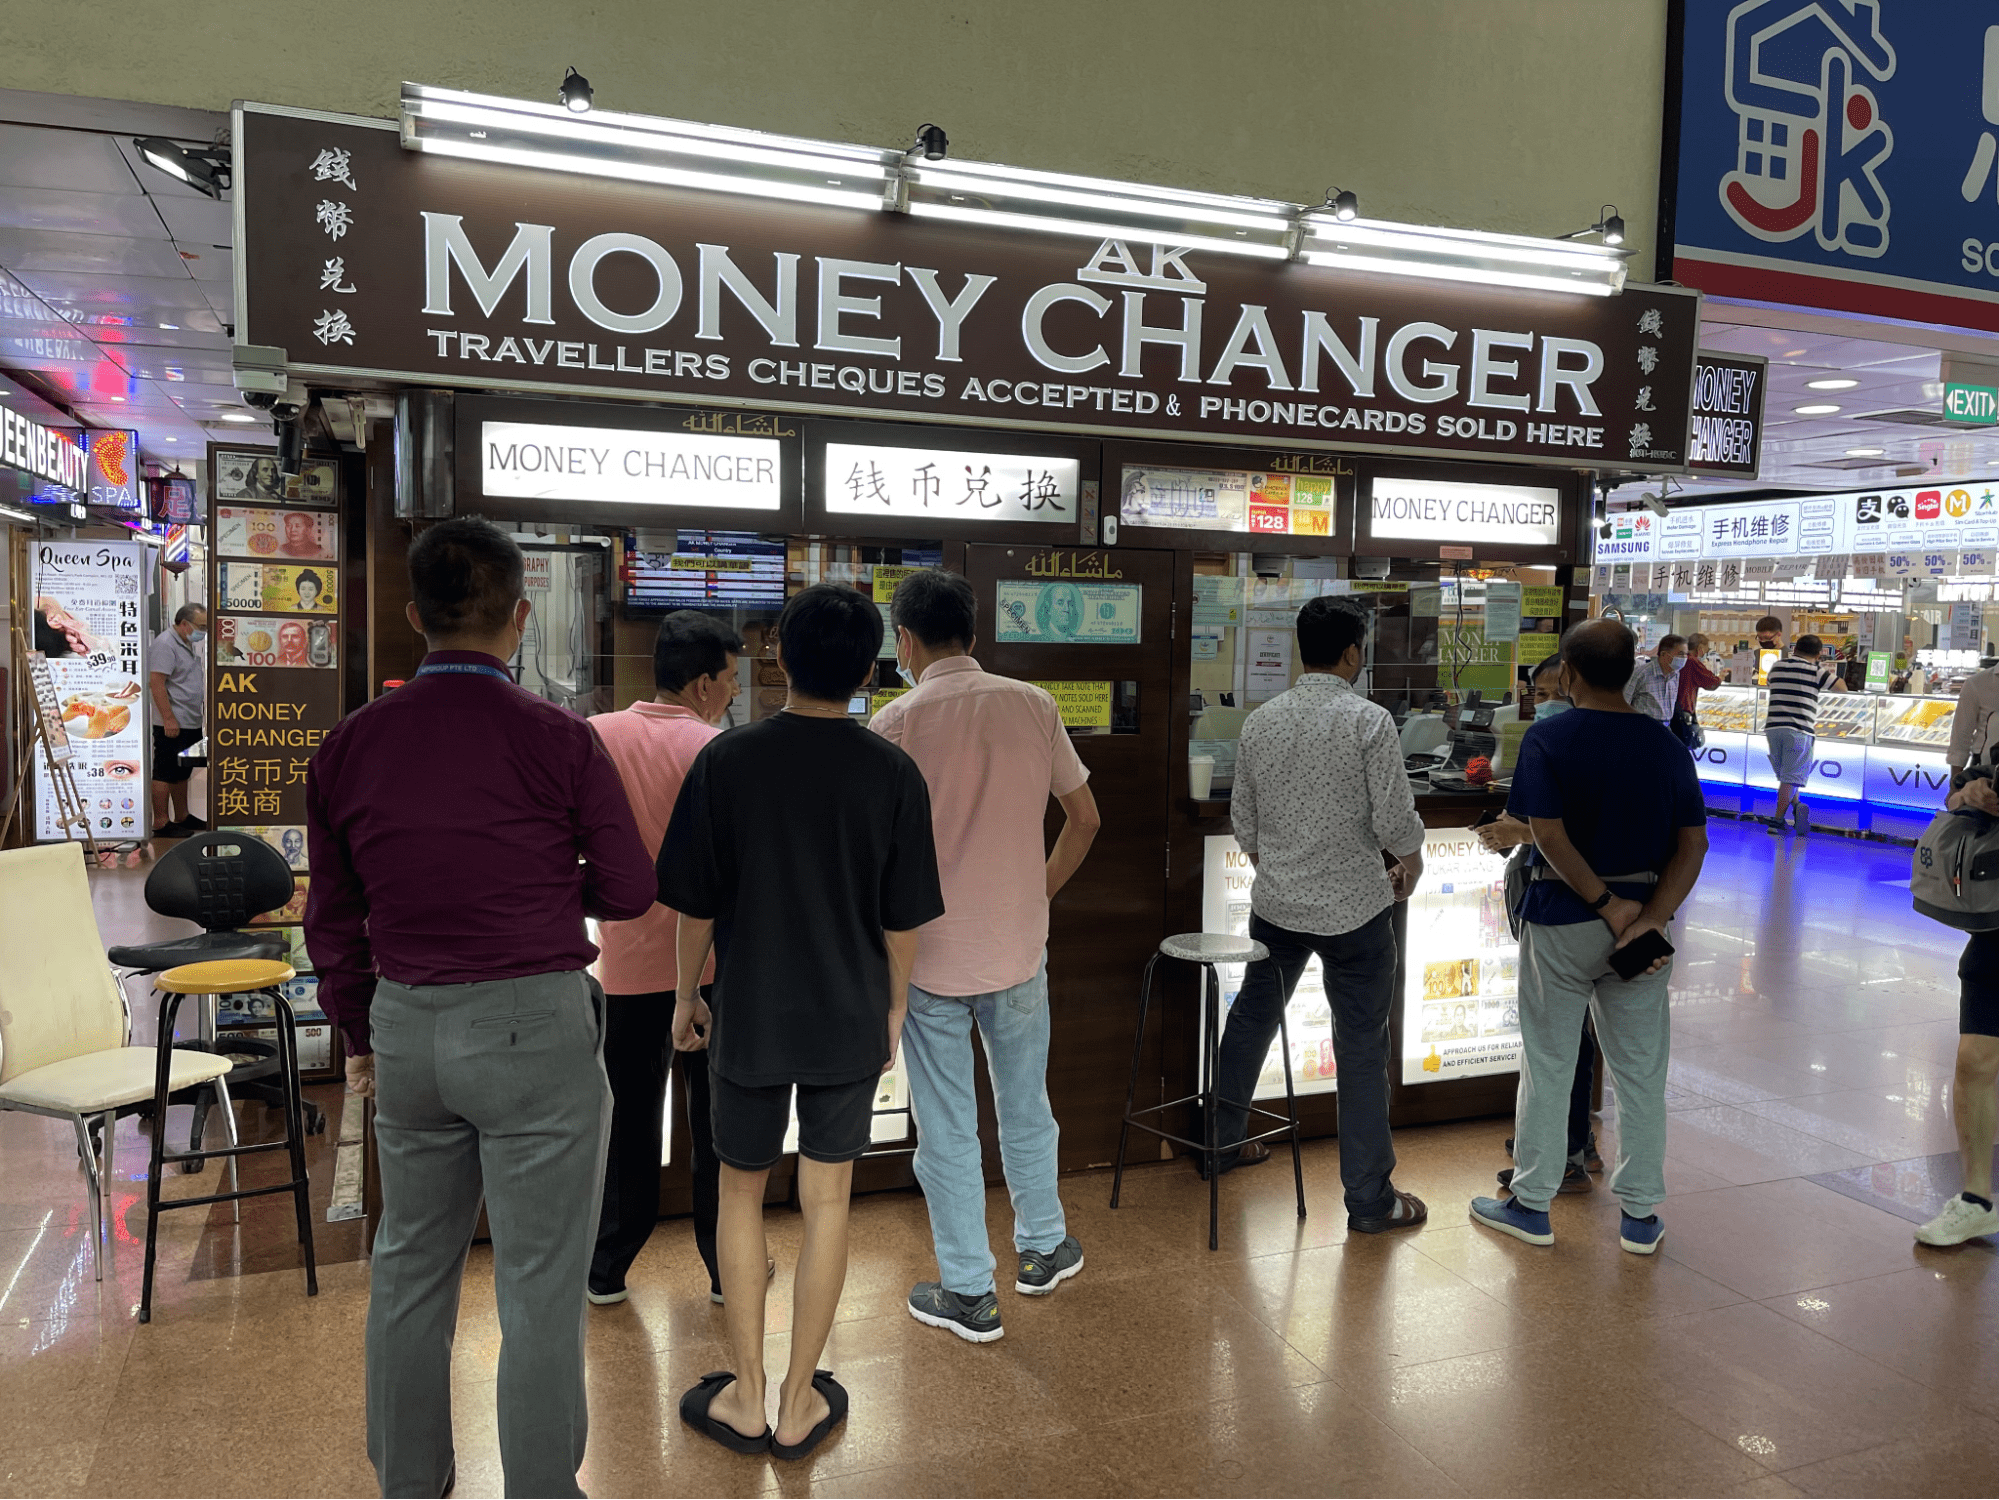 money changers singapore - AK Money Changer